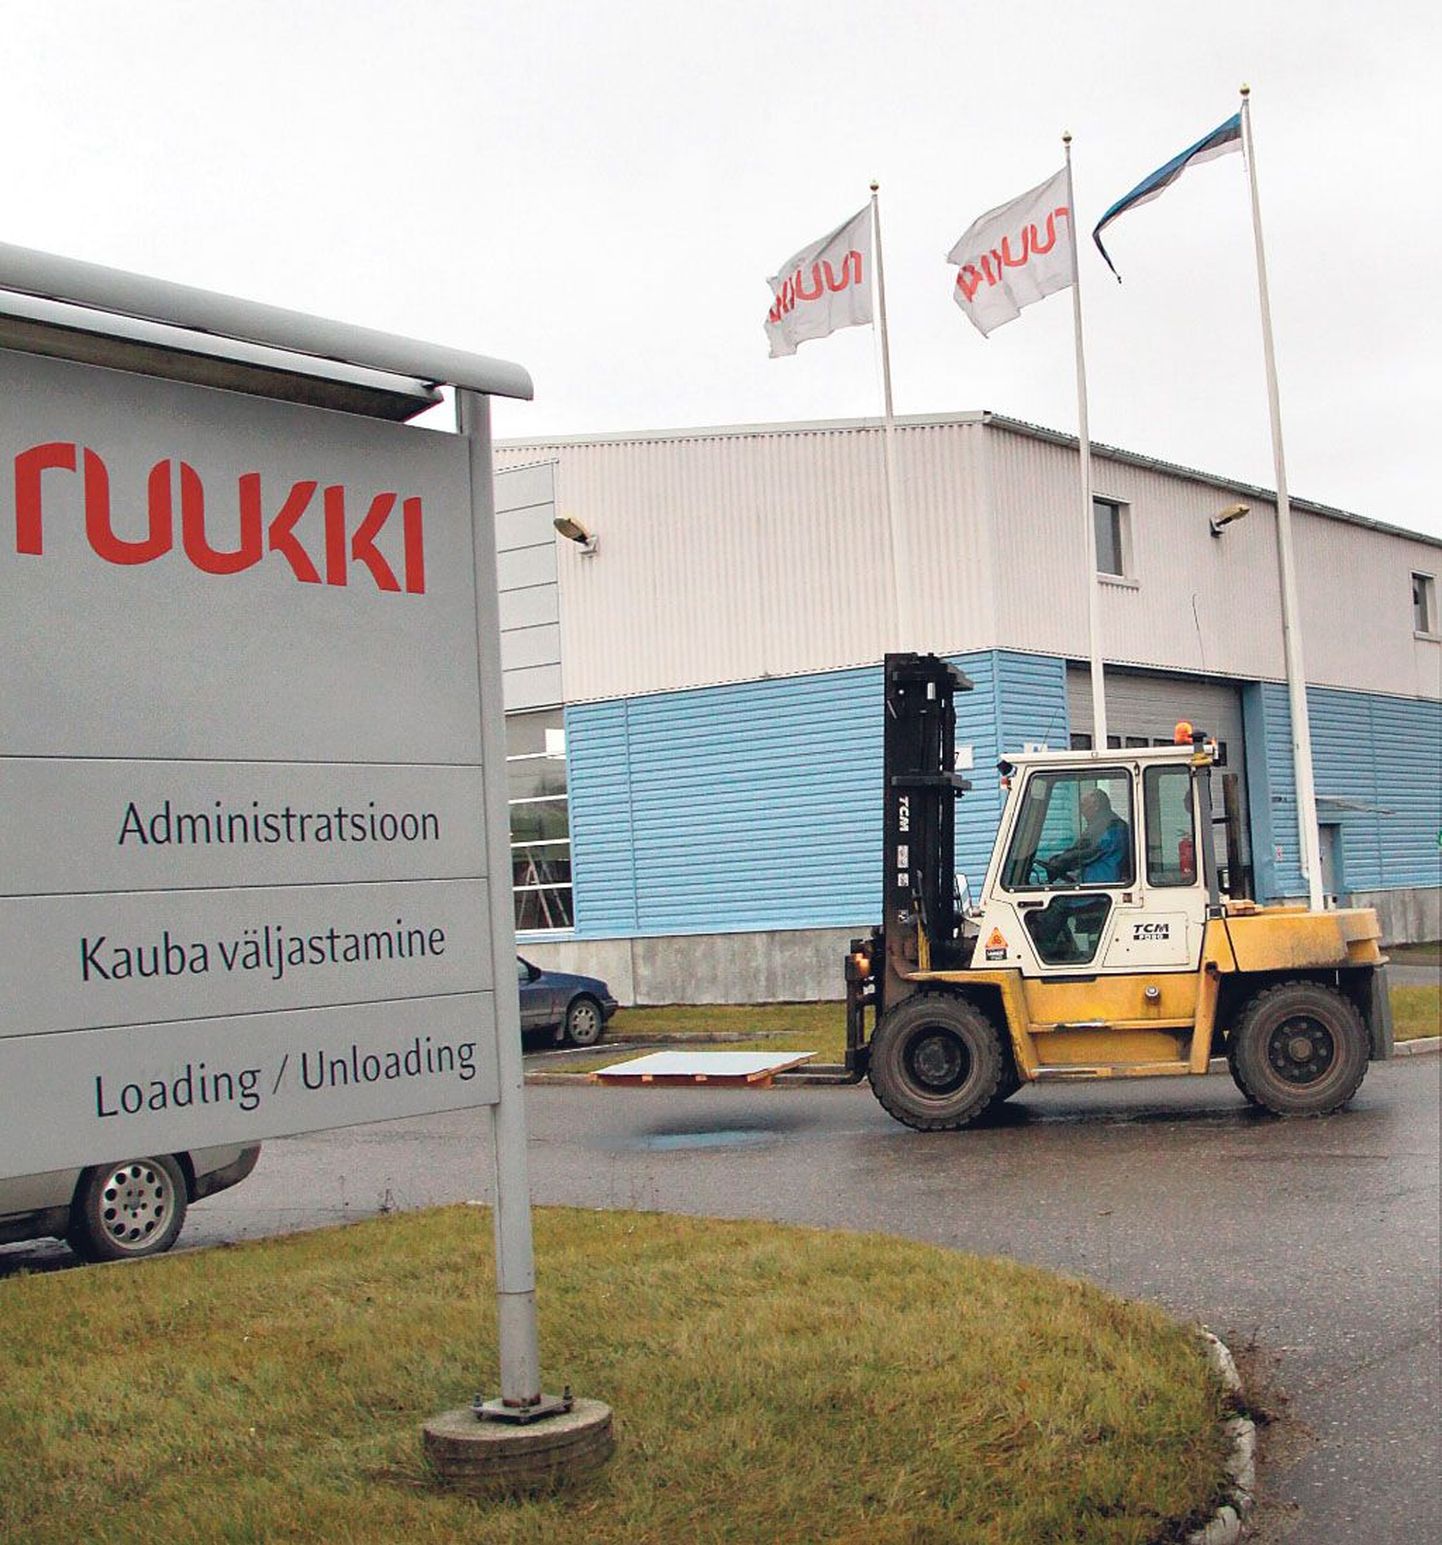 Inimene soovib - kontsern kamandab: Ruukki Pärnu tehases toodetud ehituskomponente hakatakse valmistama Soomes. Siin aga suureneb katusekomponentide toodang.